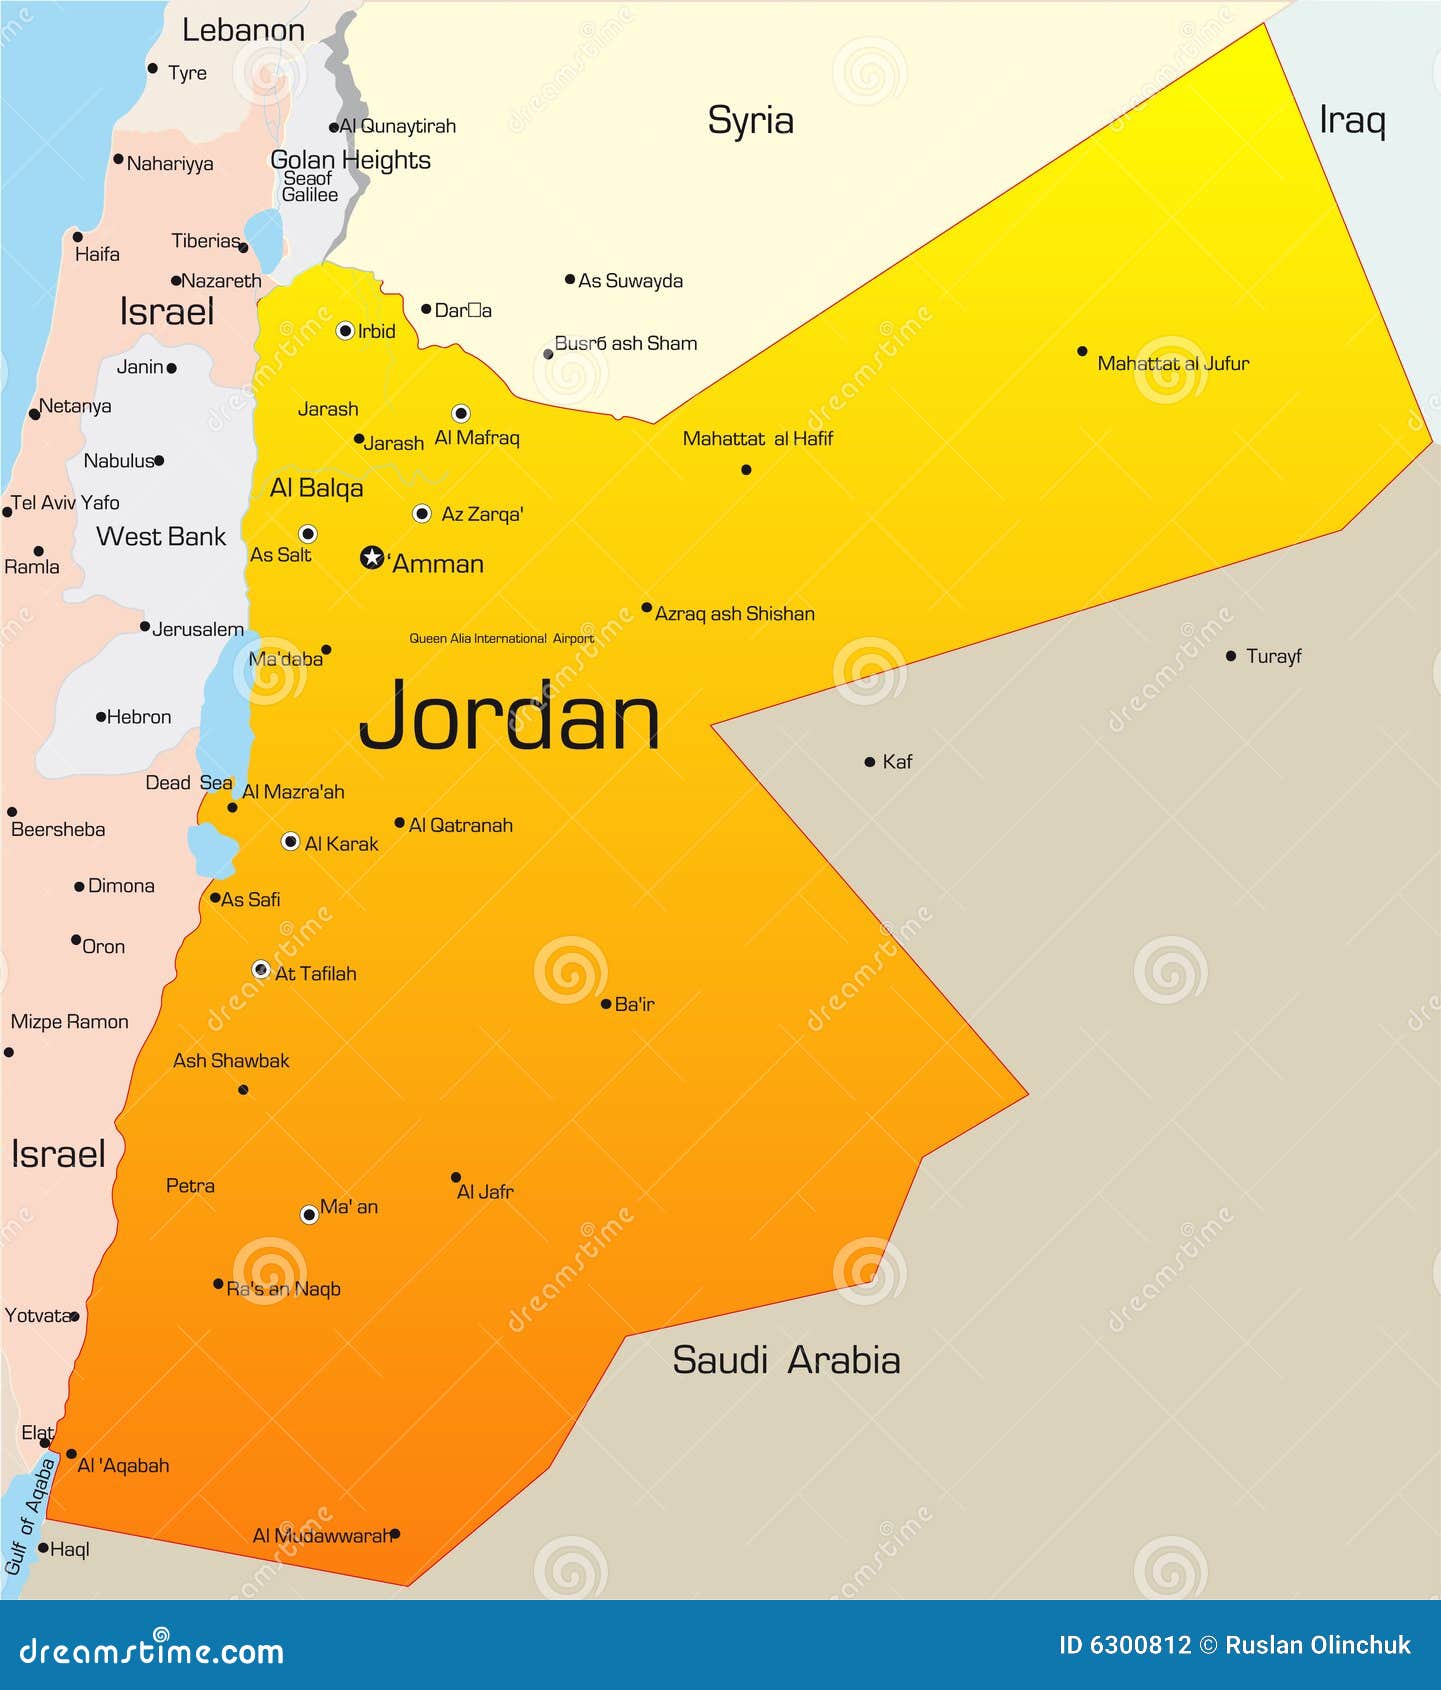 Jordania ilustracja z kraj - 6300812